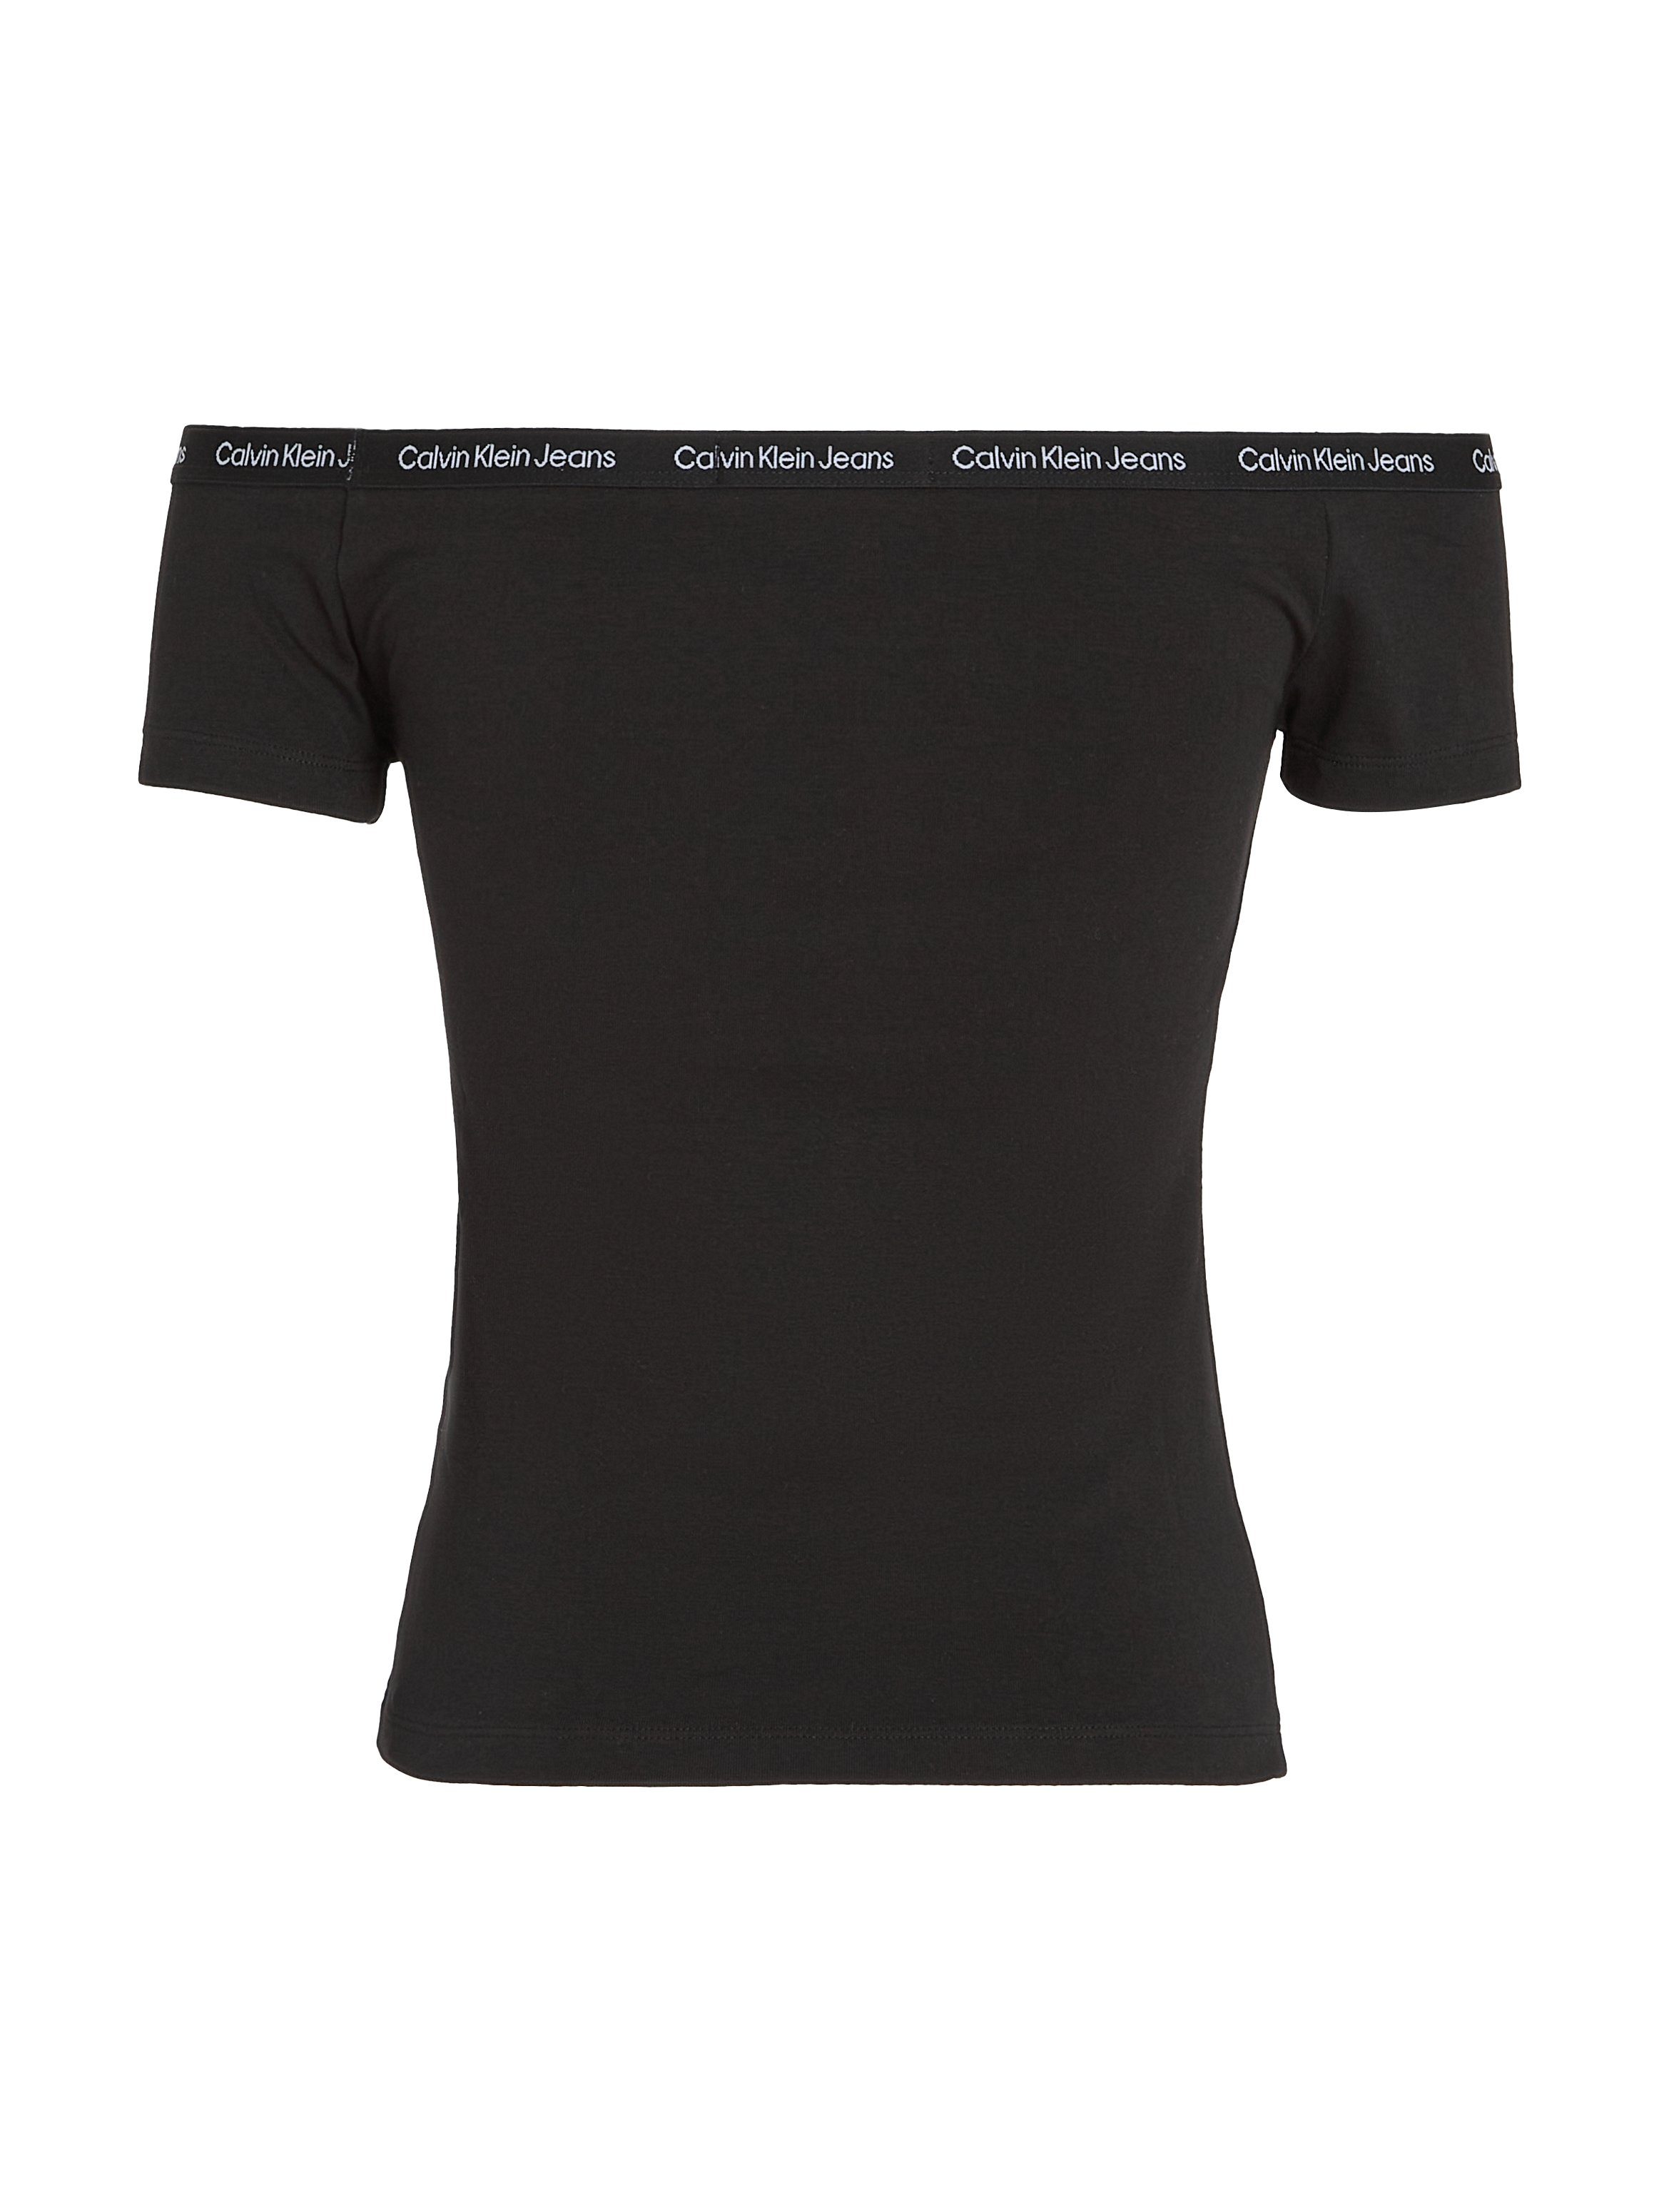 Calvin Klein T-shirt LOGO ELASTIC BARDOT TOP